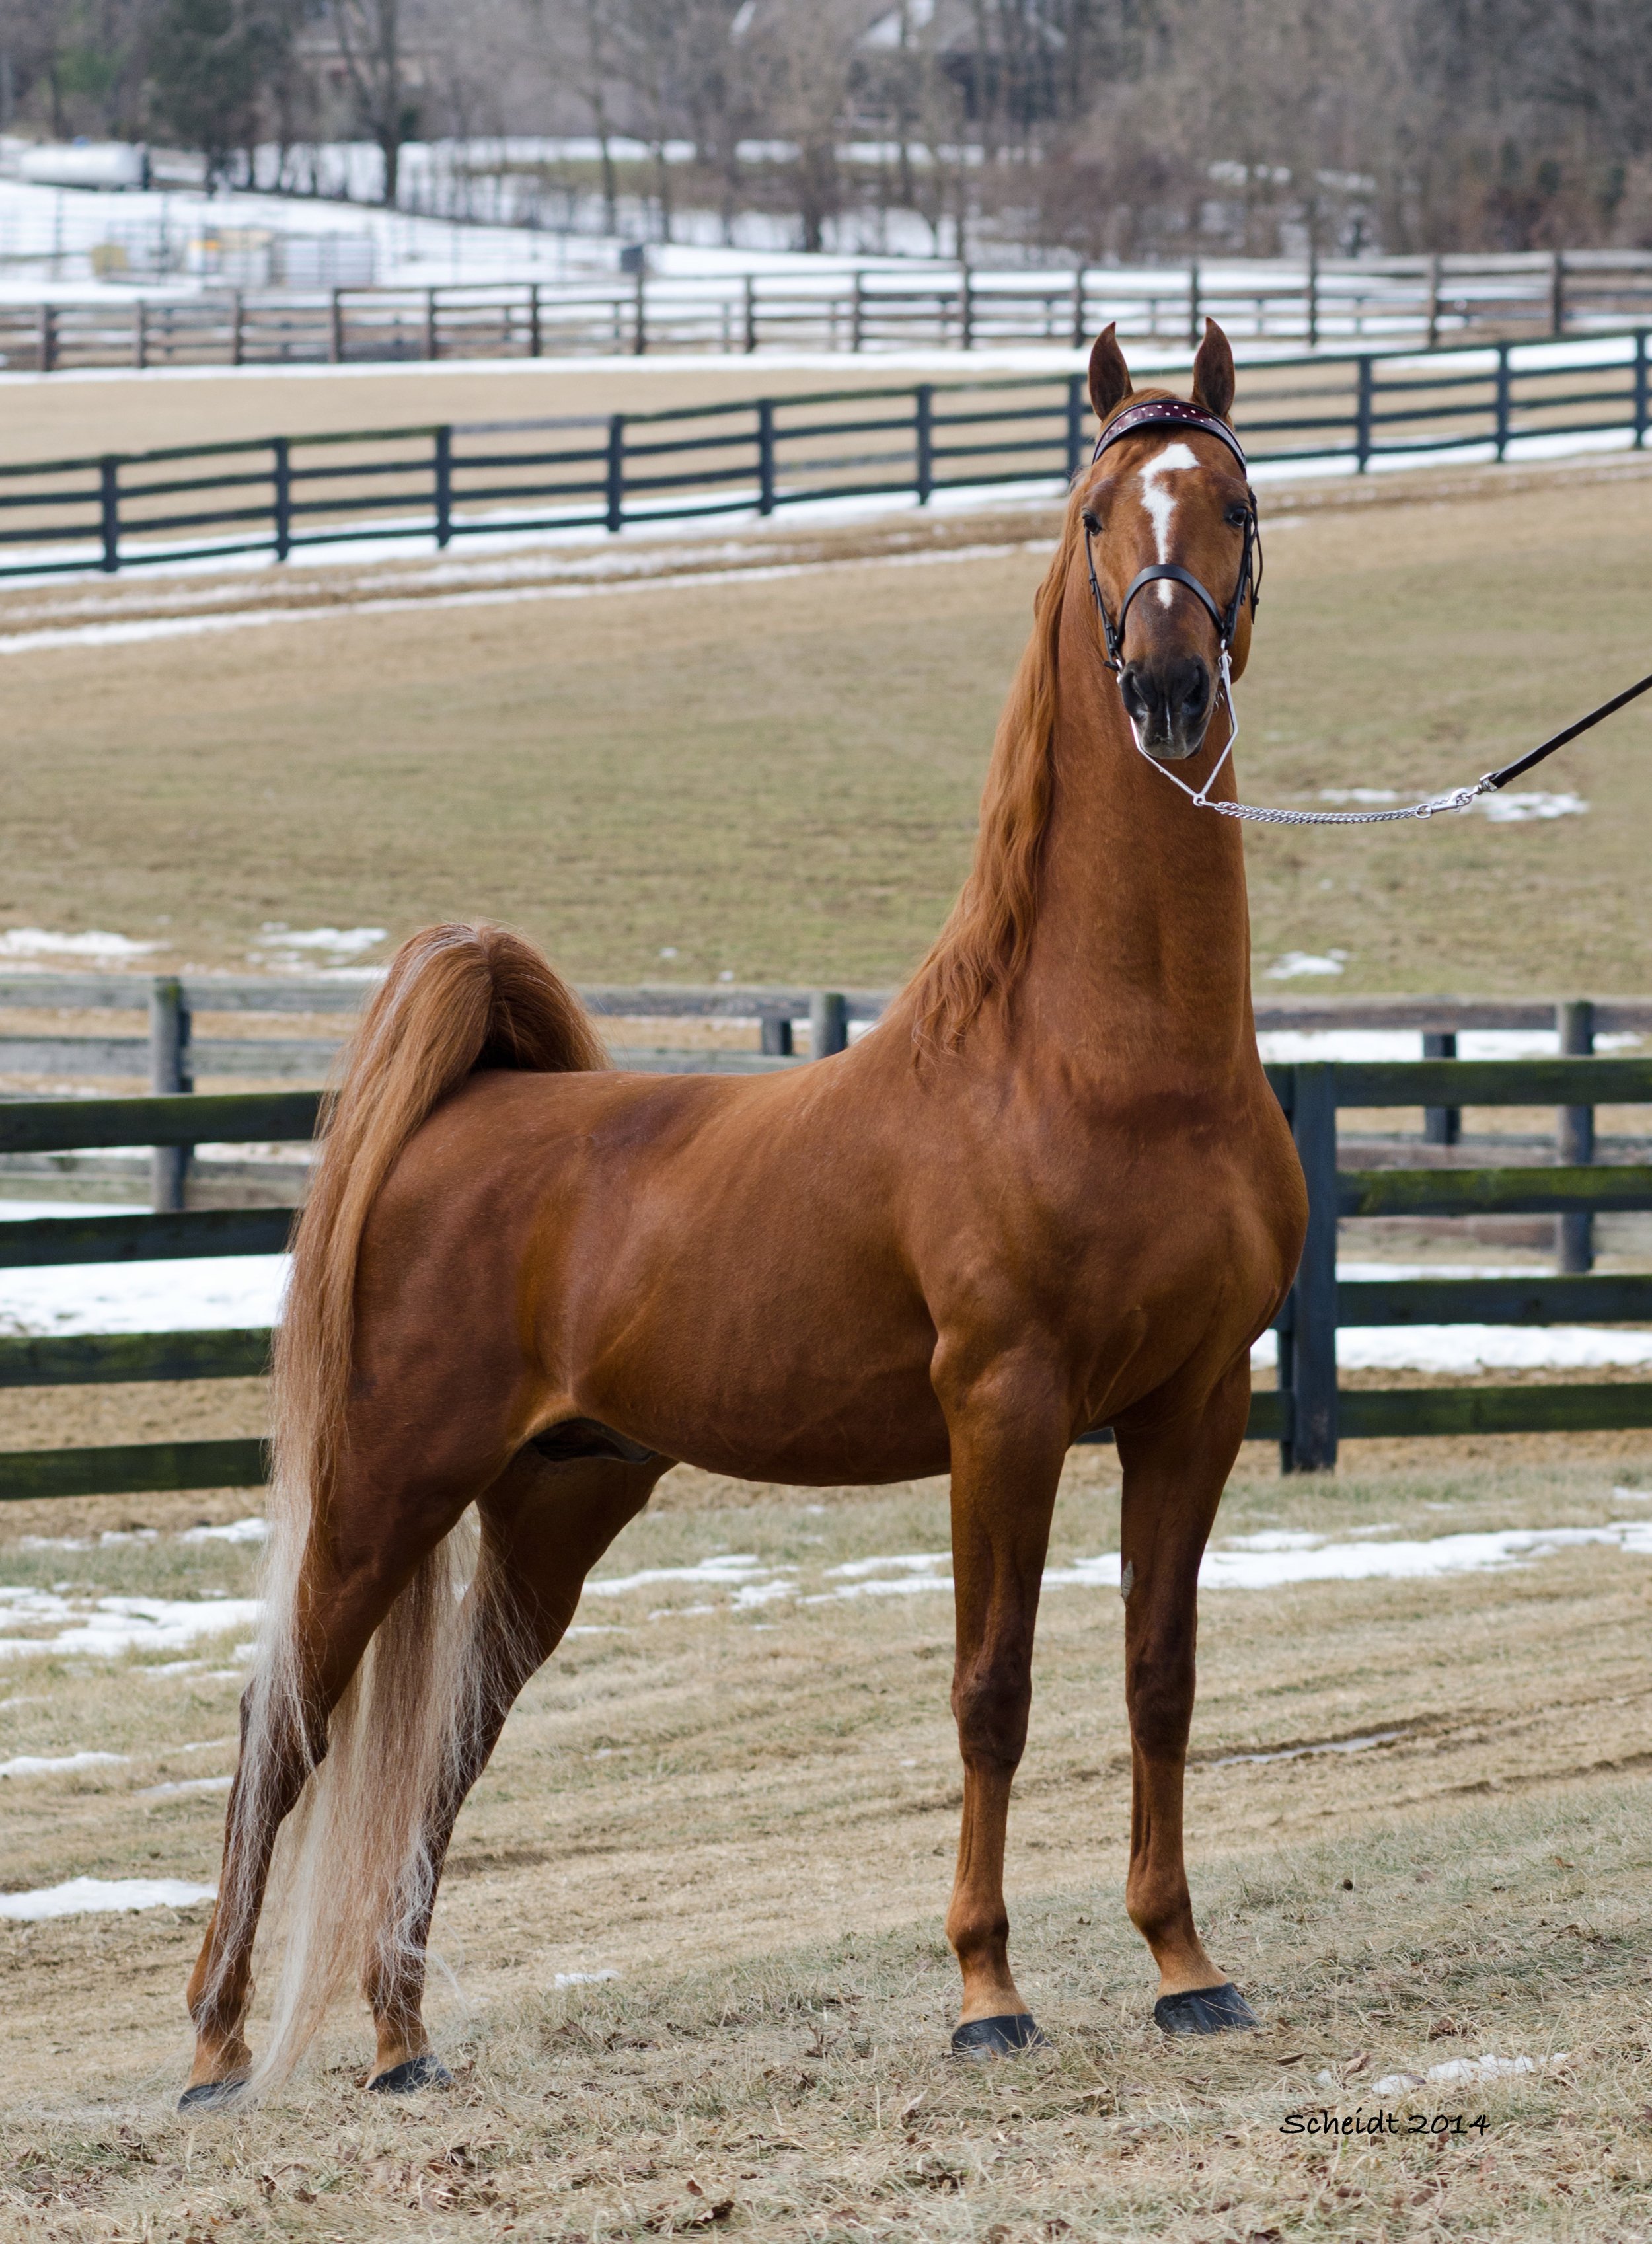 Американская верховая. Американская верховая сэддлбред. Американская верховая лошадь (сэддлбред). Теннессийская прогулочная лошадь. Теннессийская порода лошадей.